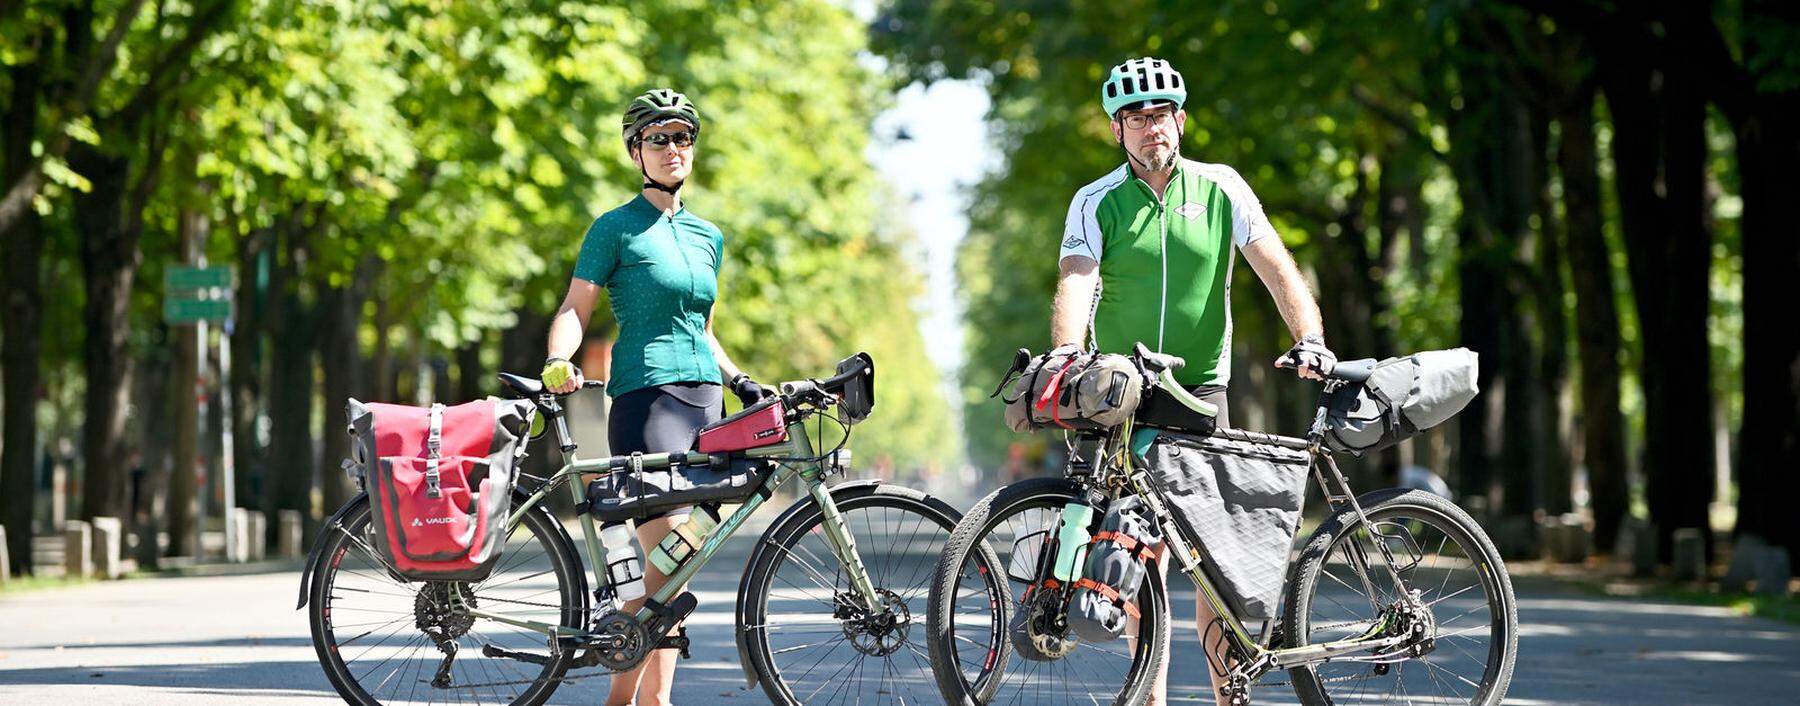 Julia und Clemens P. starten ihre Radreise von ihrer Wohnung nahe des Praters und radeln meist drei Wochen durch ein Land.